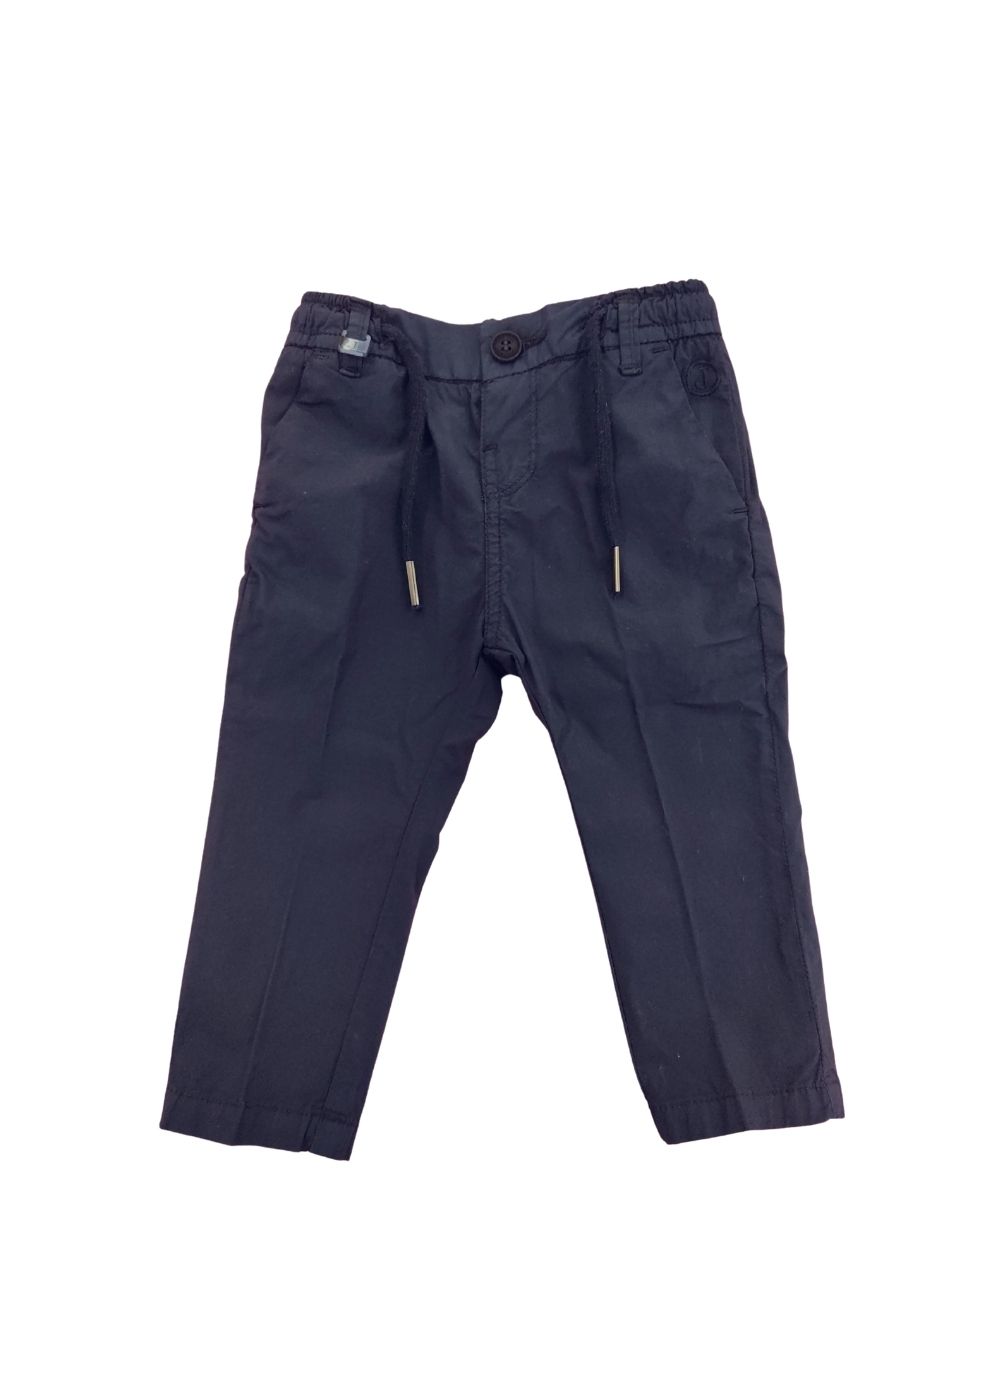 Featured image for “Jeckerson Pantalone Blu Neonato”